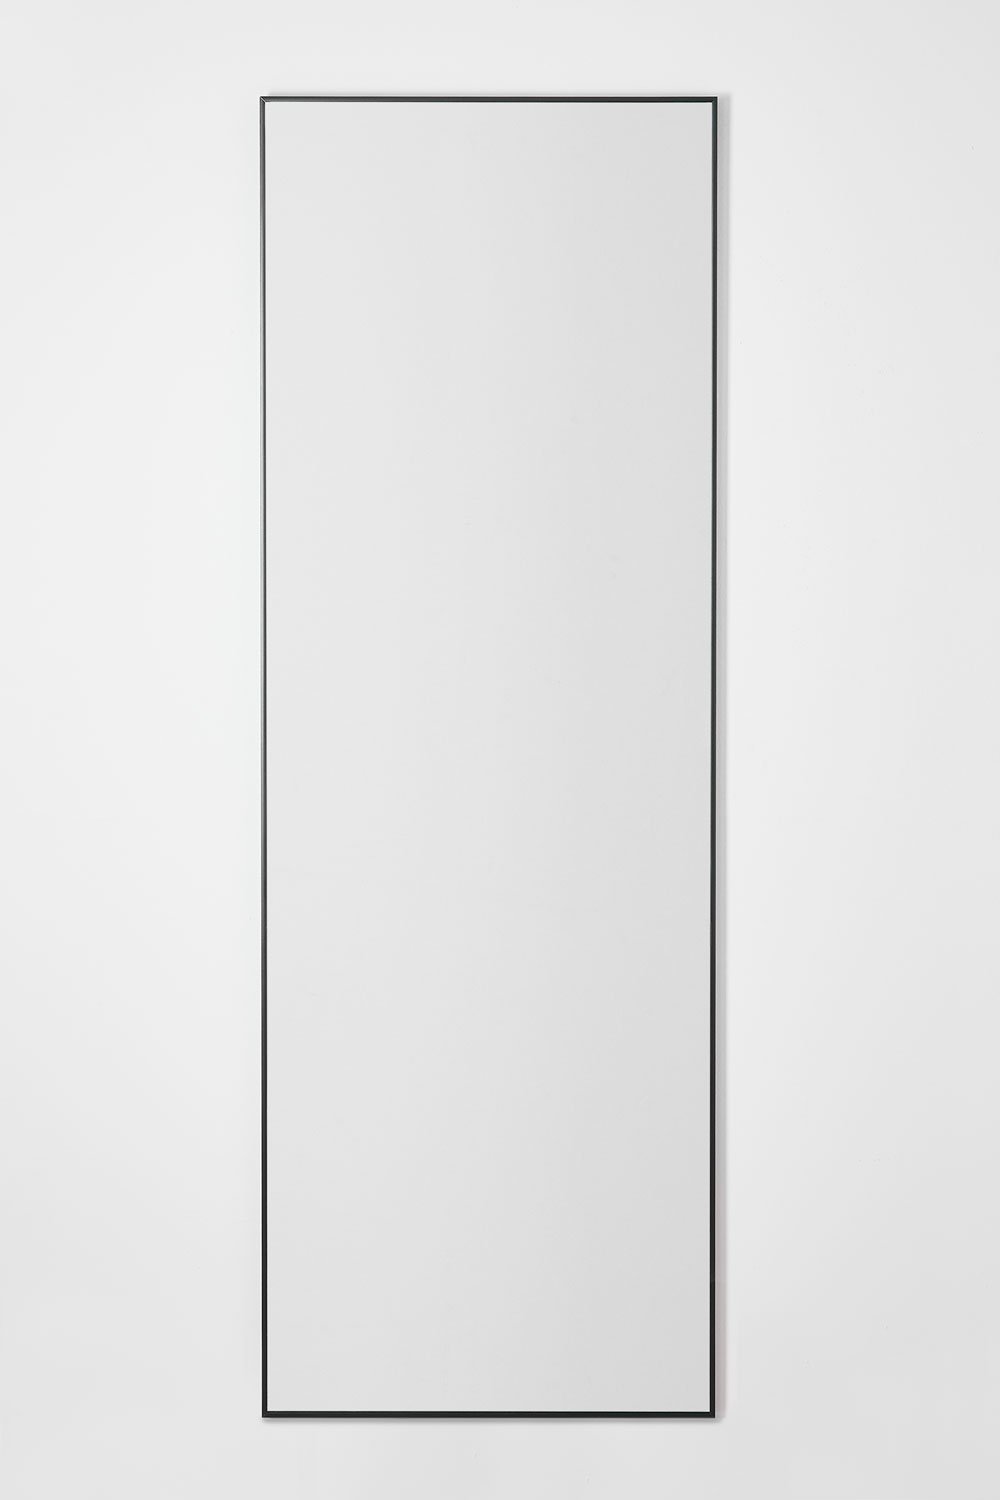 Specchio da parete rettangolare in alluminio (70x200 cm) Mirjam, immagine della galleria 1